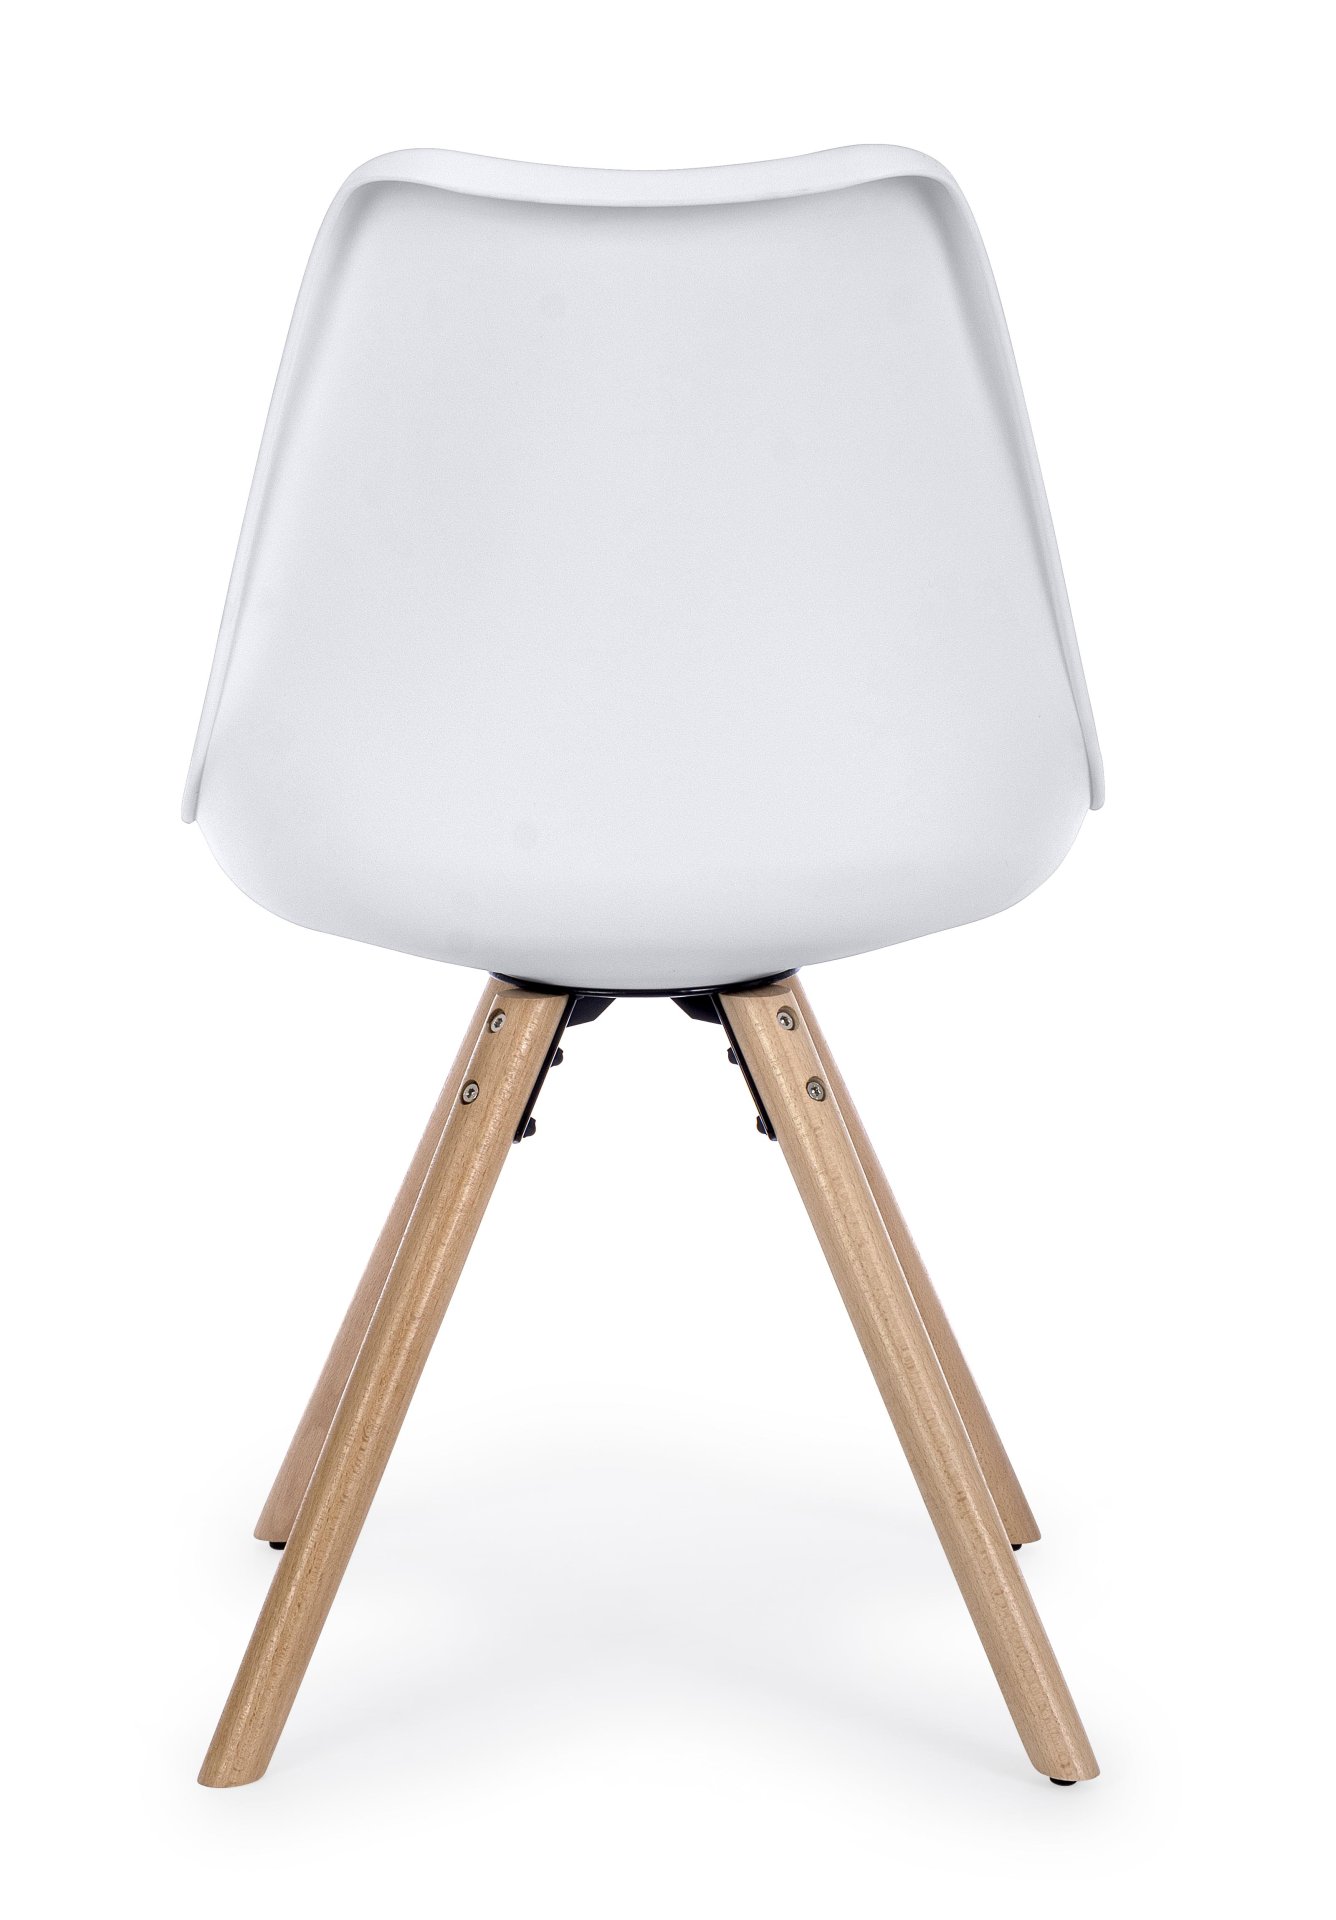 Der Stuhl New Trend überzeugt mit seinem modernem Design. Gefertigt wurde der Stuhl aus Kunststoff, welcher einen weißen Farbton besitzt. Das Gestell ist aus Buchenholz. Die Sitzhöhe des Stuhls ist 49 cm